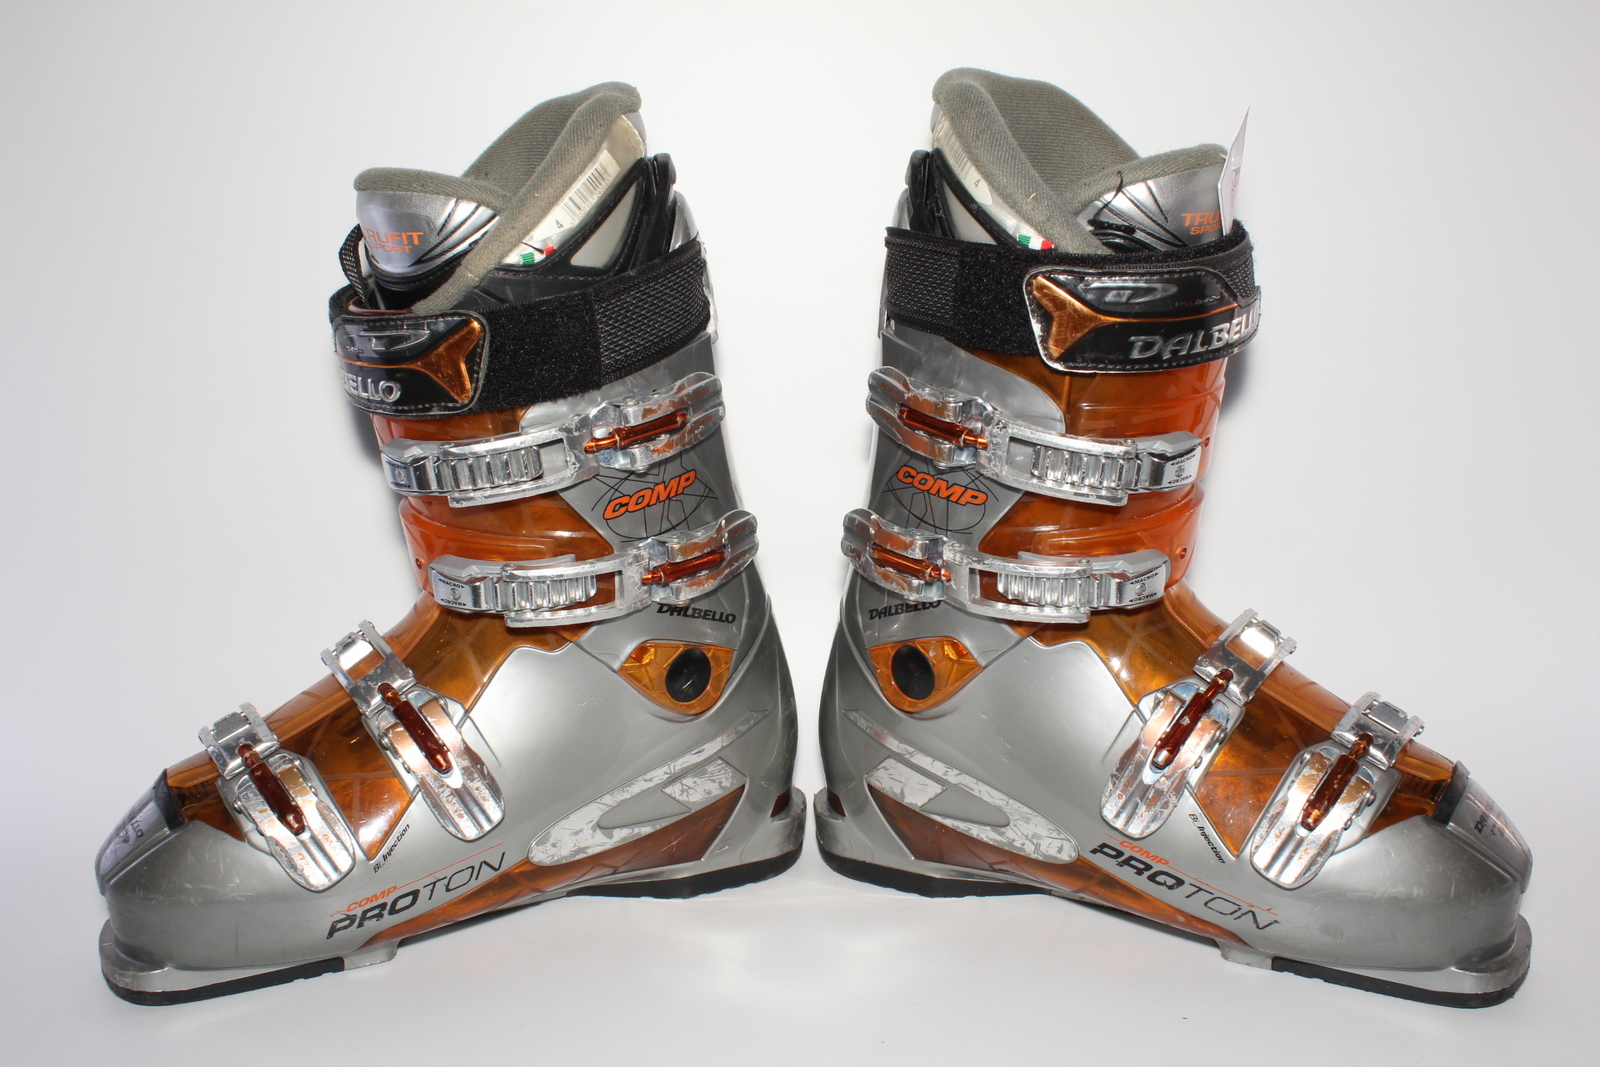 Lyžařské boty Dalbello Comp Proton vel. EU43 flexe 70